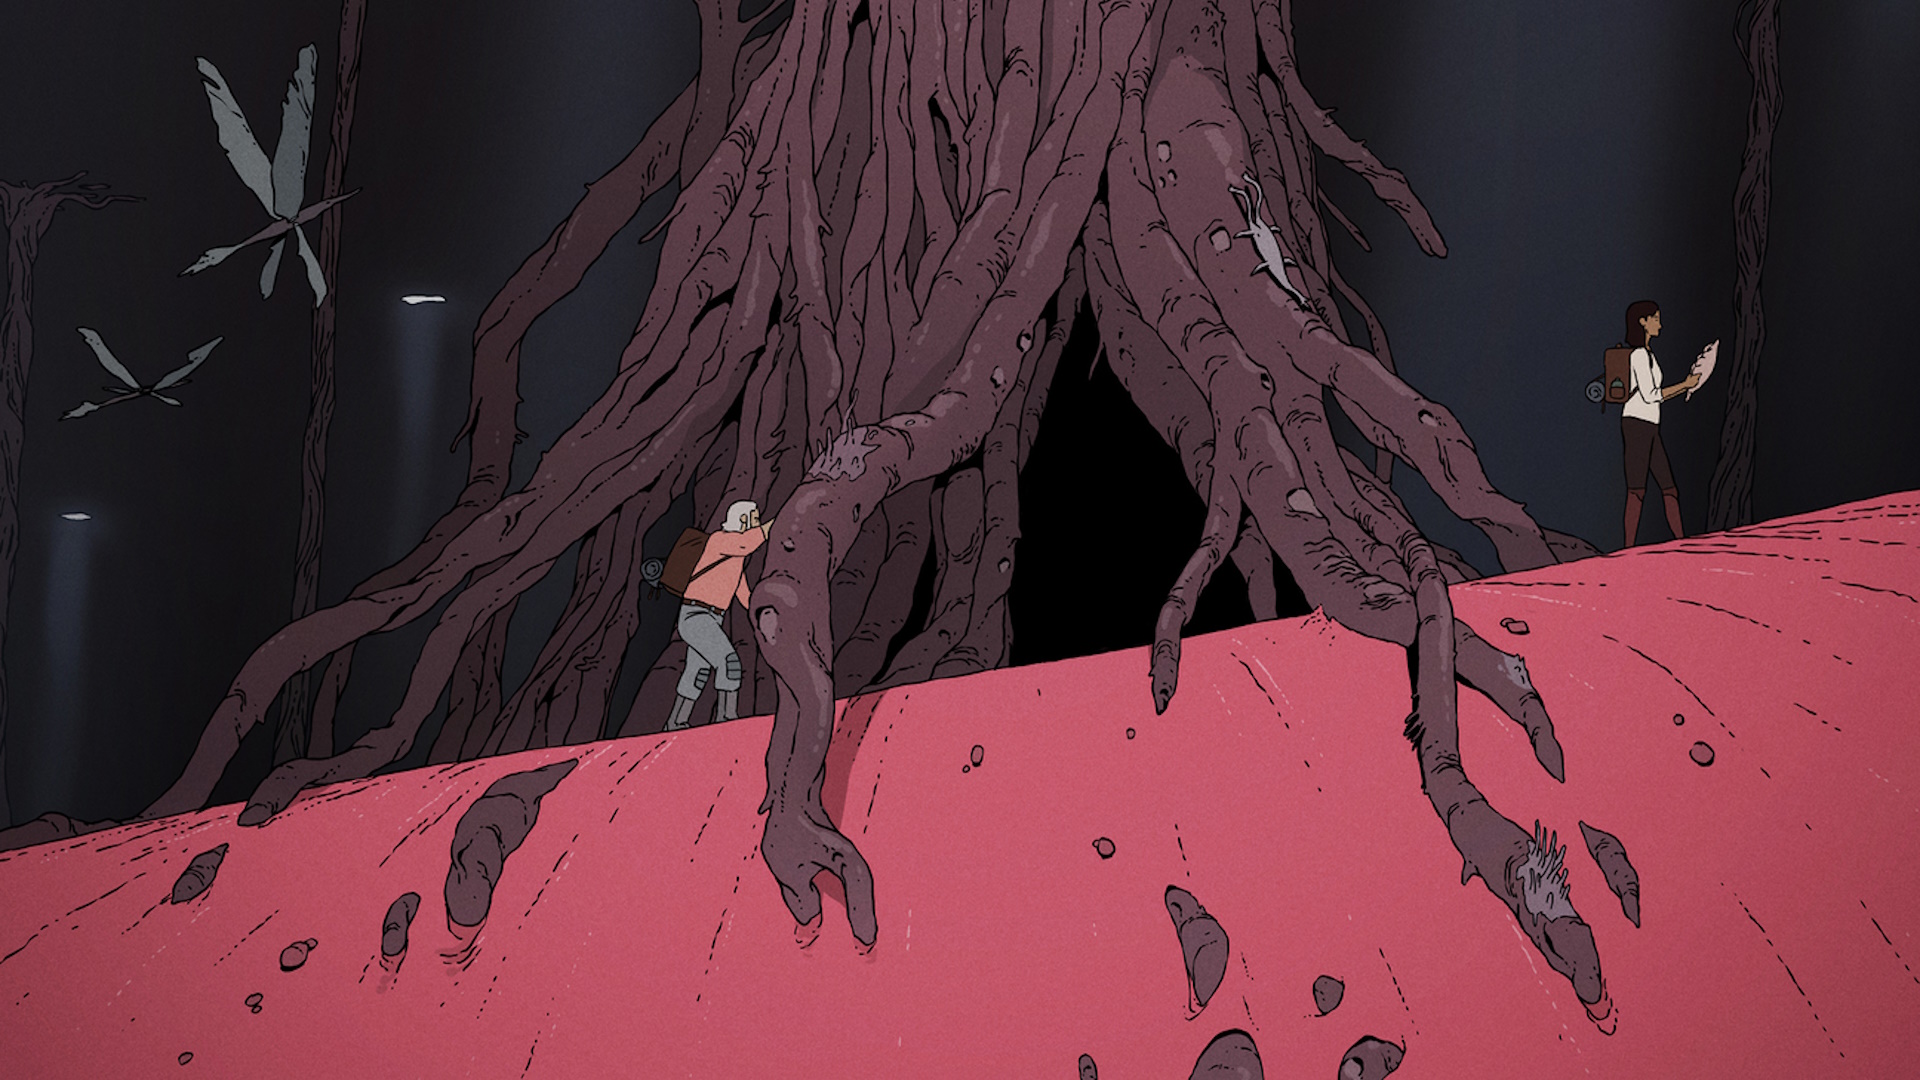 奇妙なエイリアンの木と2人の人間が描かれた『Scavengers Reign』のポスター